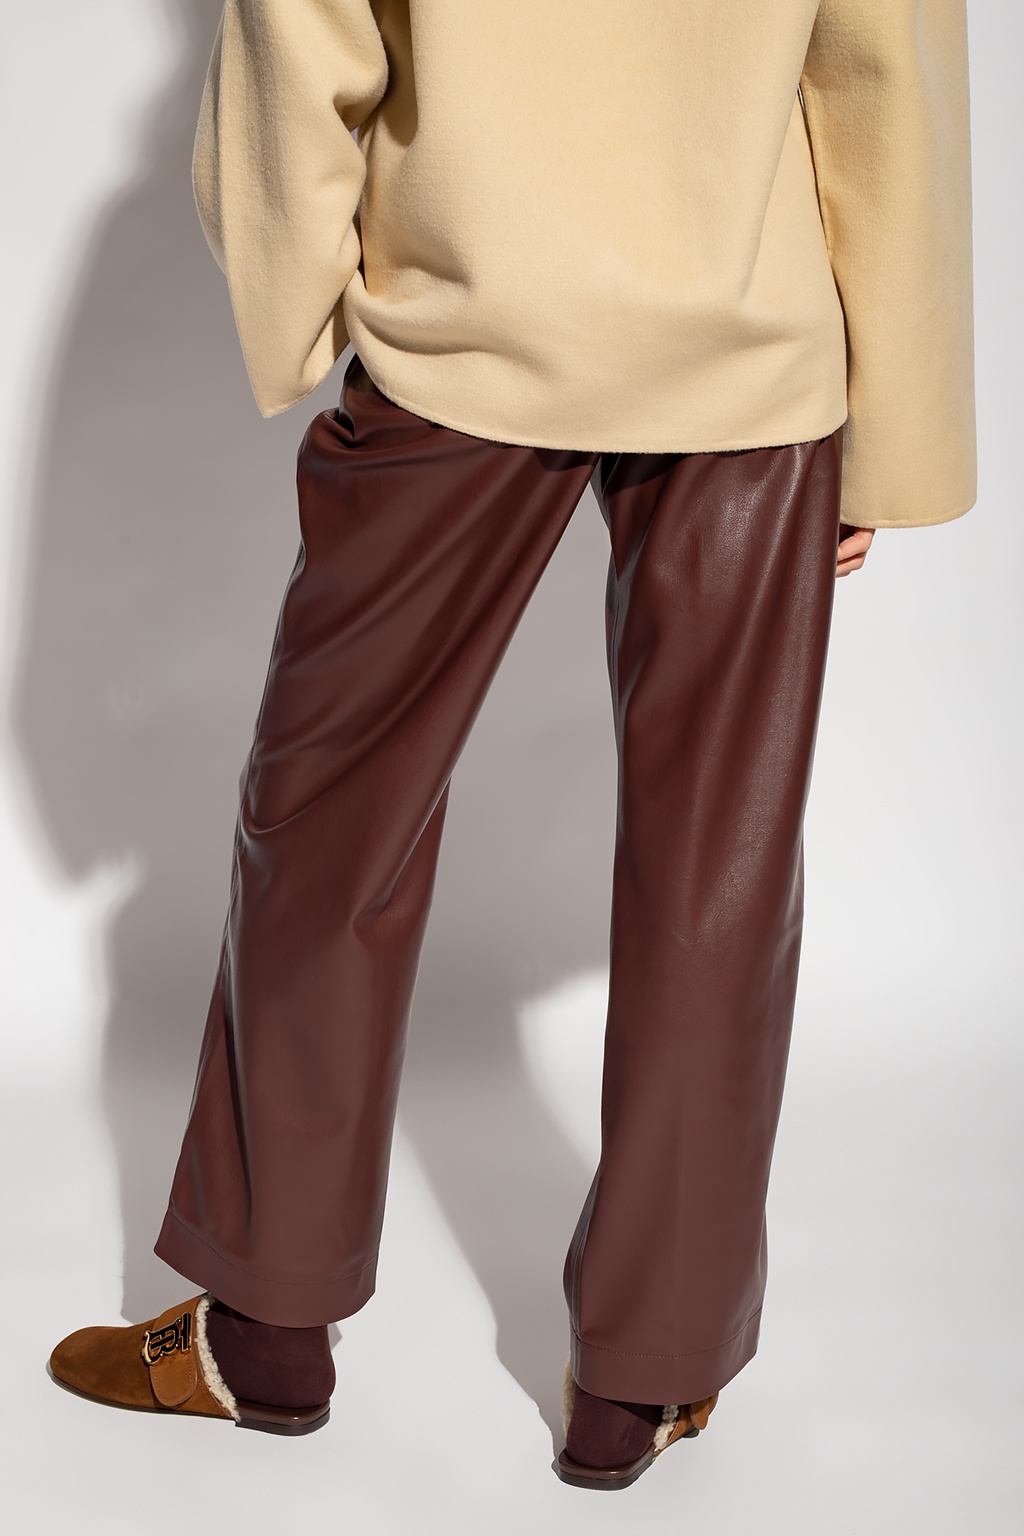 Nanushka ‘Calie’ sleeveless trousers in vegan leather